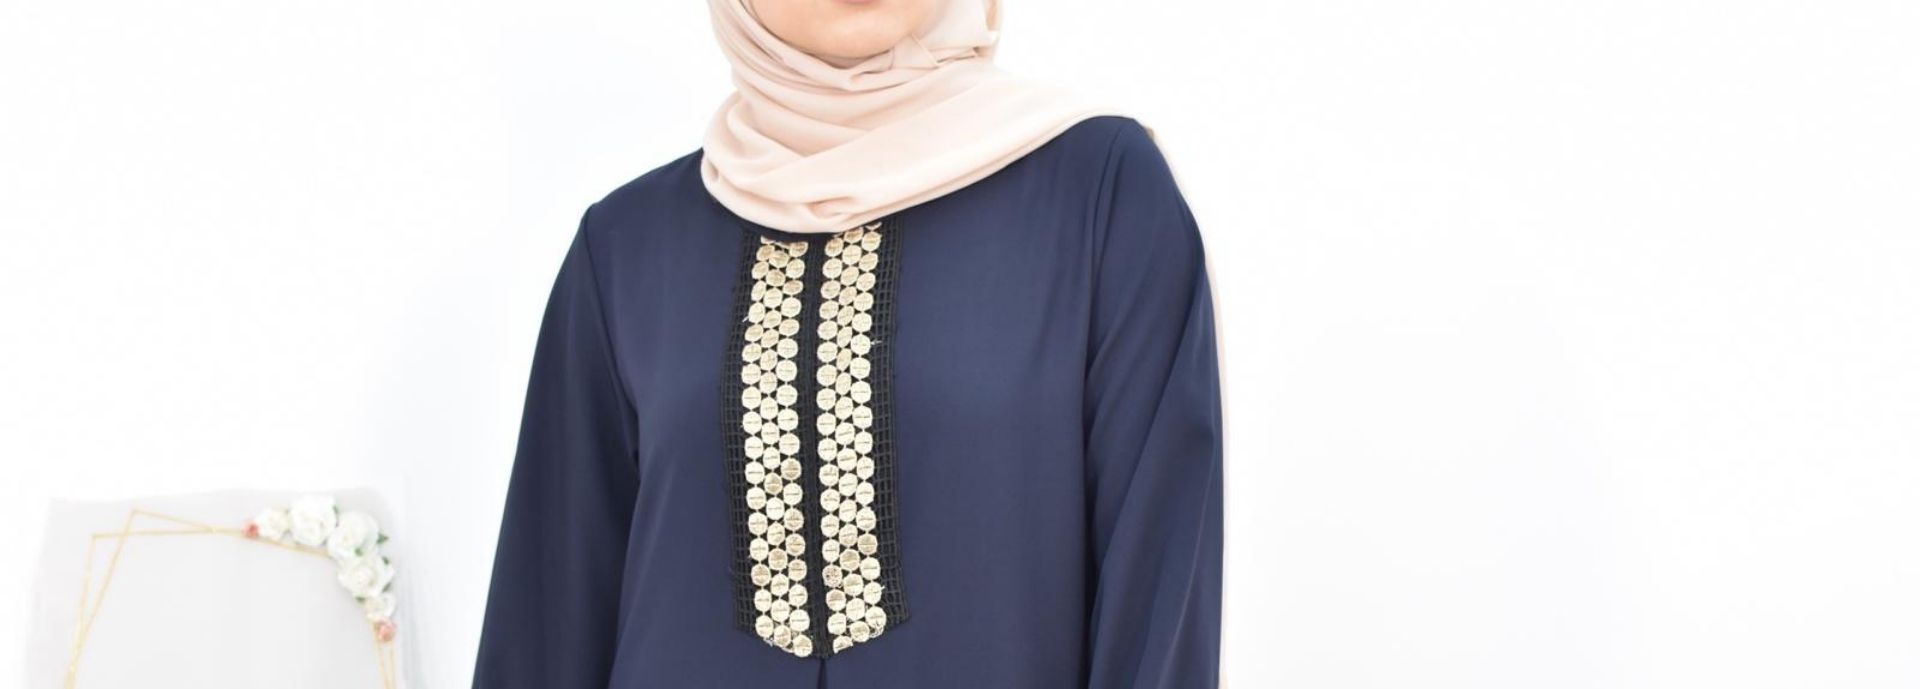 Quel vêtement de sport choisir pour la femme Musulmane - Neyssa